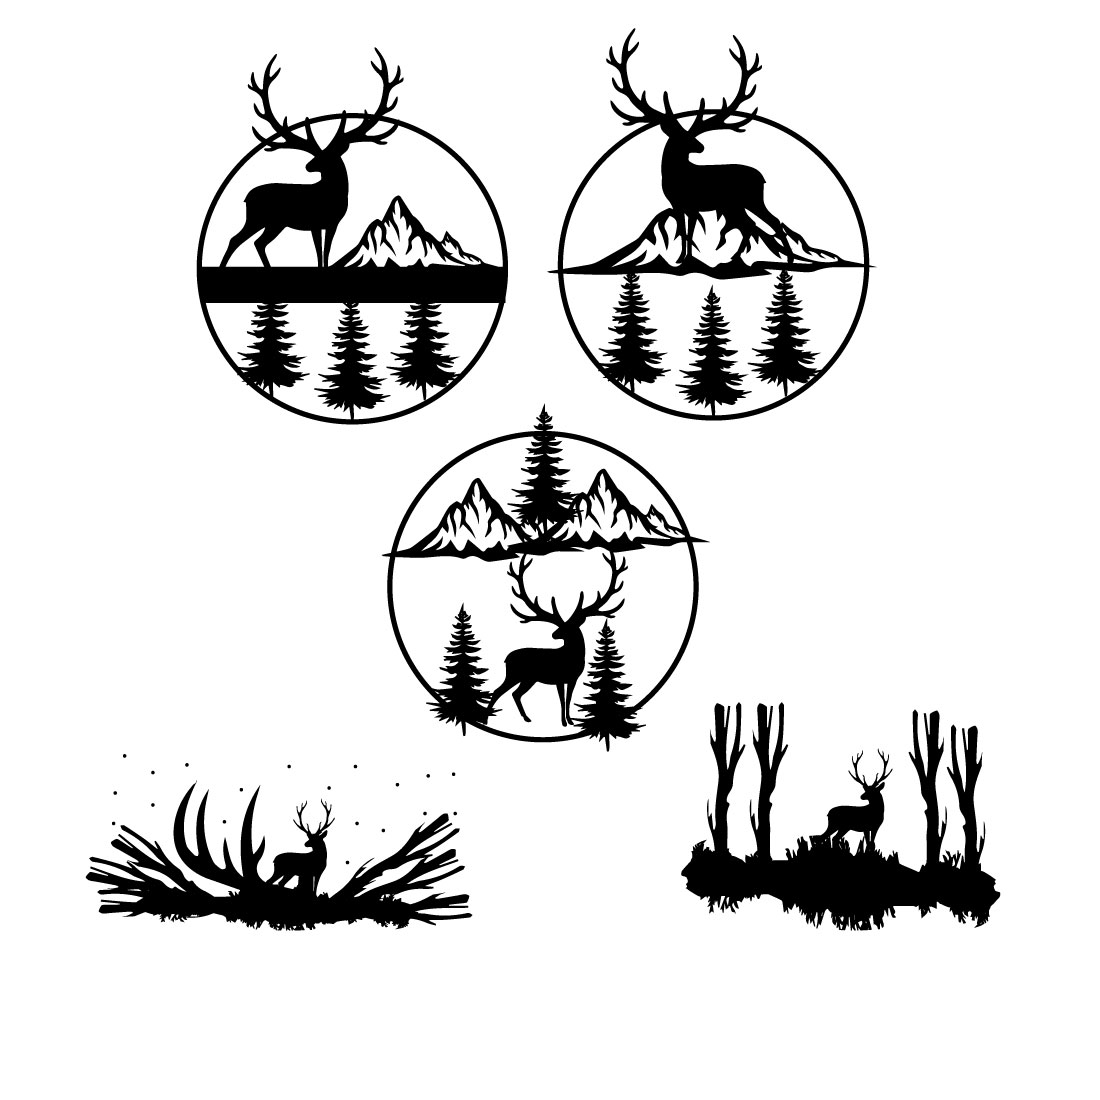 Compilation of black marvelous images of deer